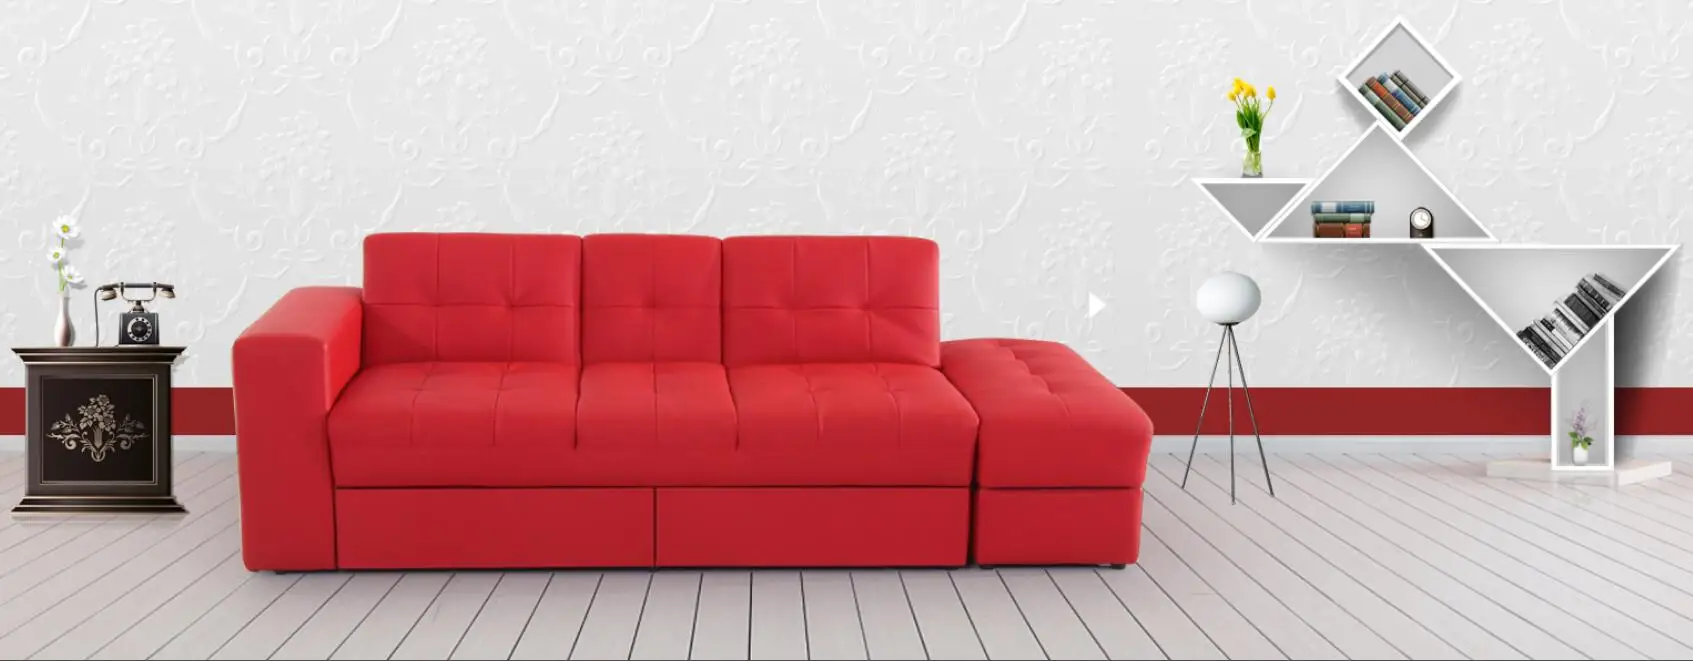 Реклама новое поступление диванов